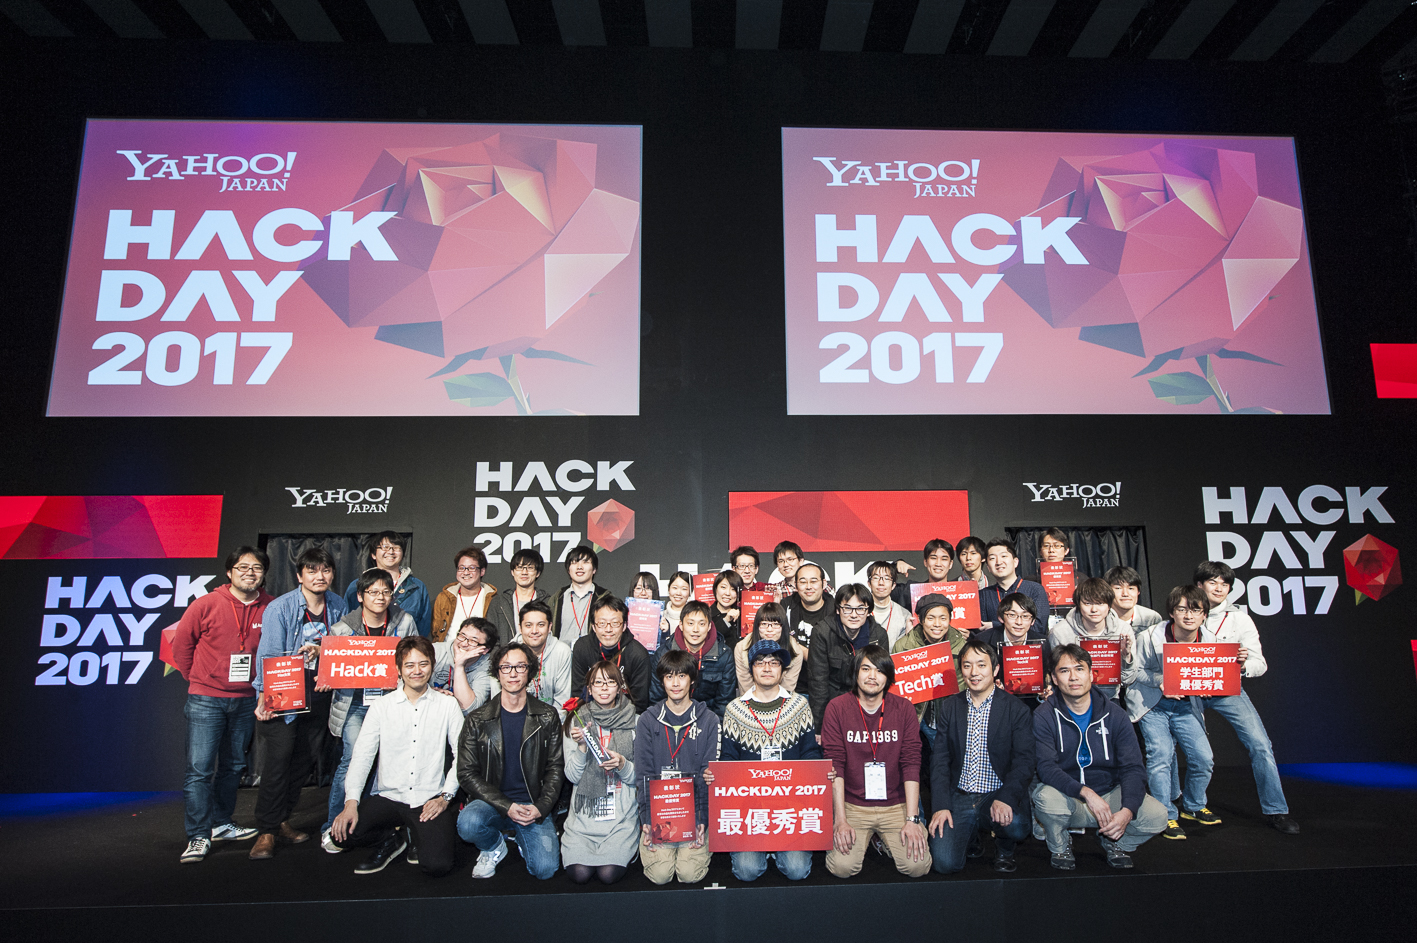 日本最大級のハッカソン Yahoo Japan Hack Day 17 最優秀賞はレゴブロックで作った迷路がvrでゲーム体験できるチーム名 アルカナラボの まよいの墓 に決定 ヤフー株式会社のプレスリリース